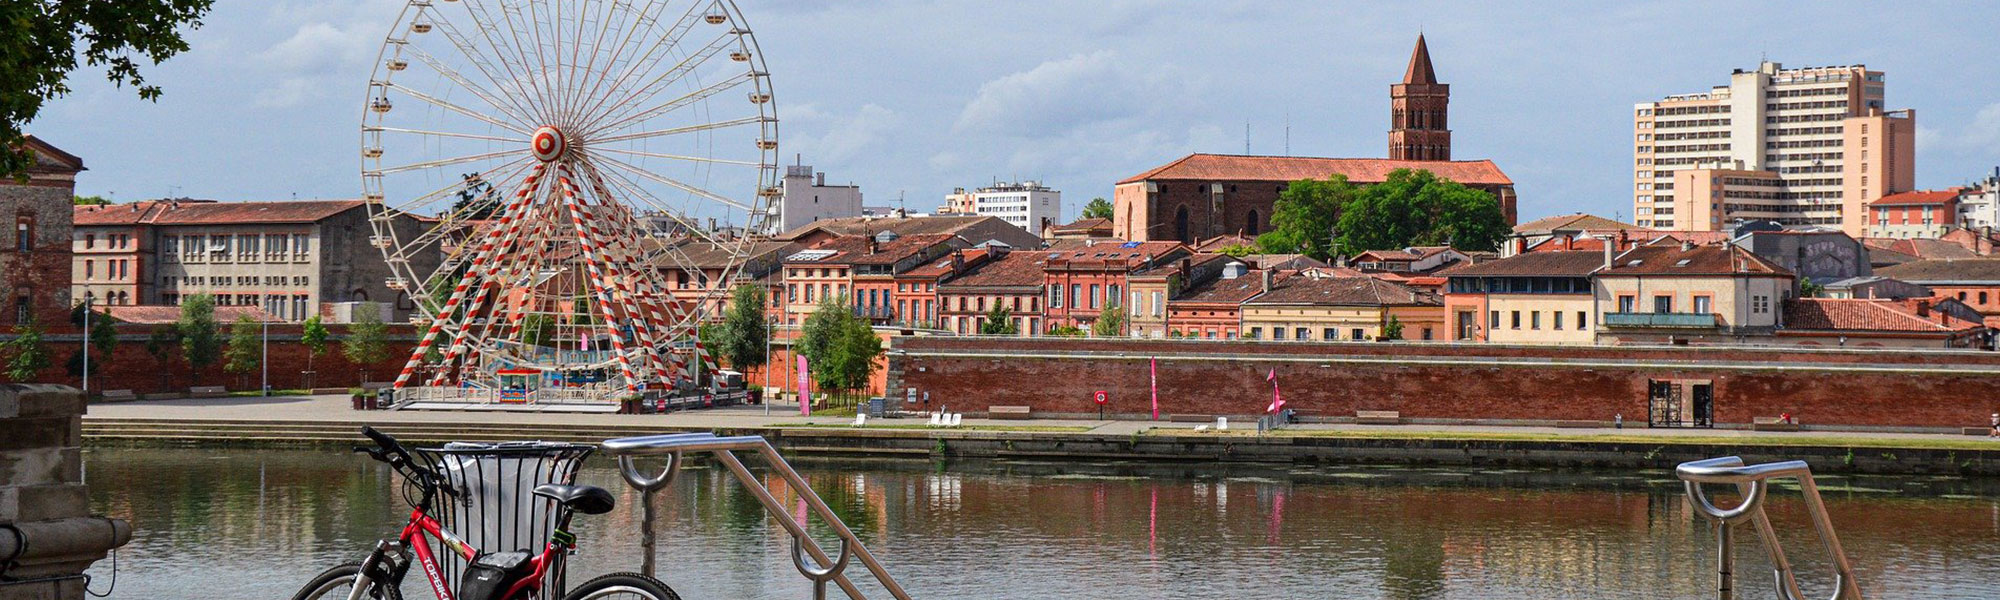 Déménager de Lille à Toulouse Dmax, entreprise de déménagement d'entreprise et particulier